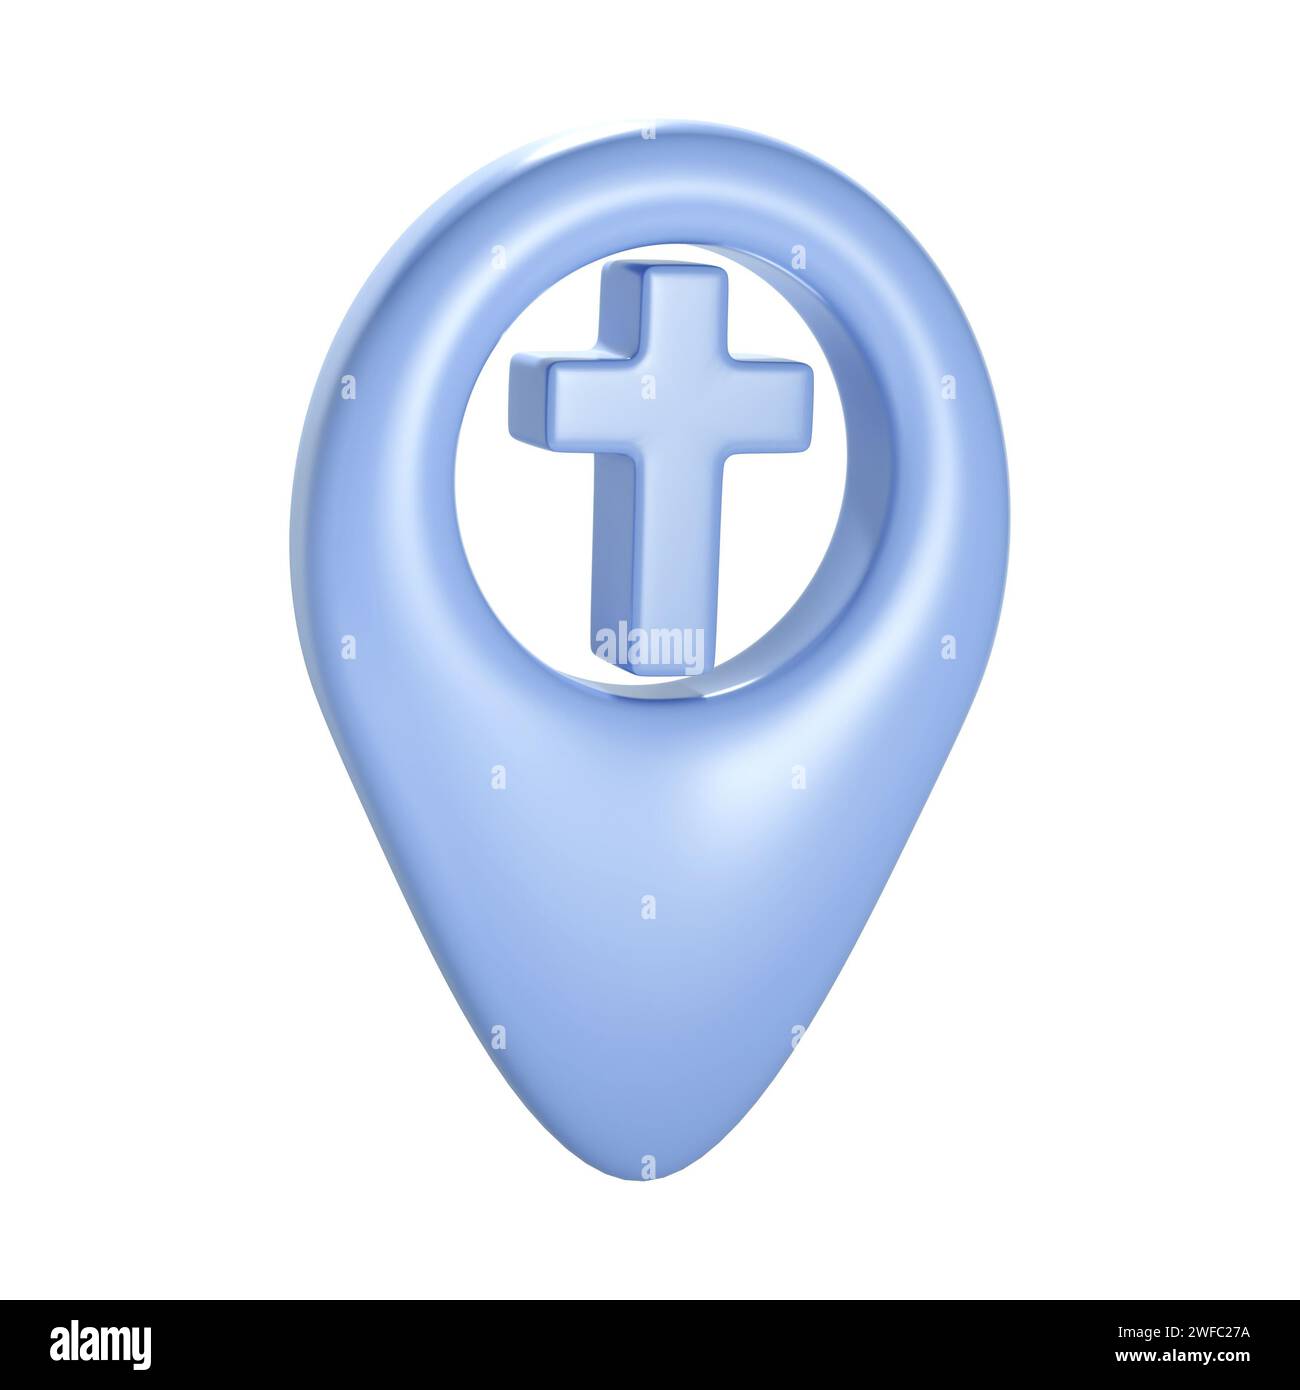 Christian 3d croix bleue géotag icône gps. Élément pour le lieu de l'église, l'adresse du bâtiment religieux. Objet sur fond blanc Banque D'Images